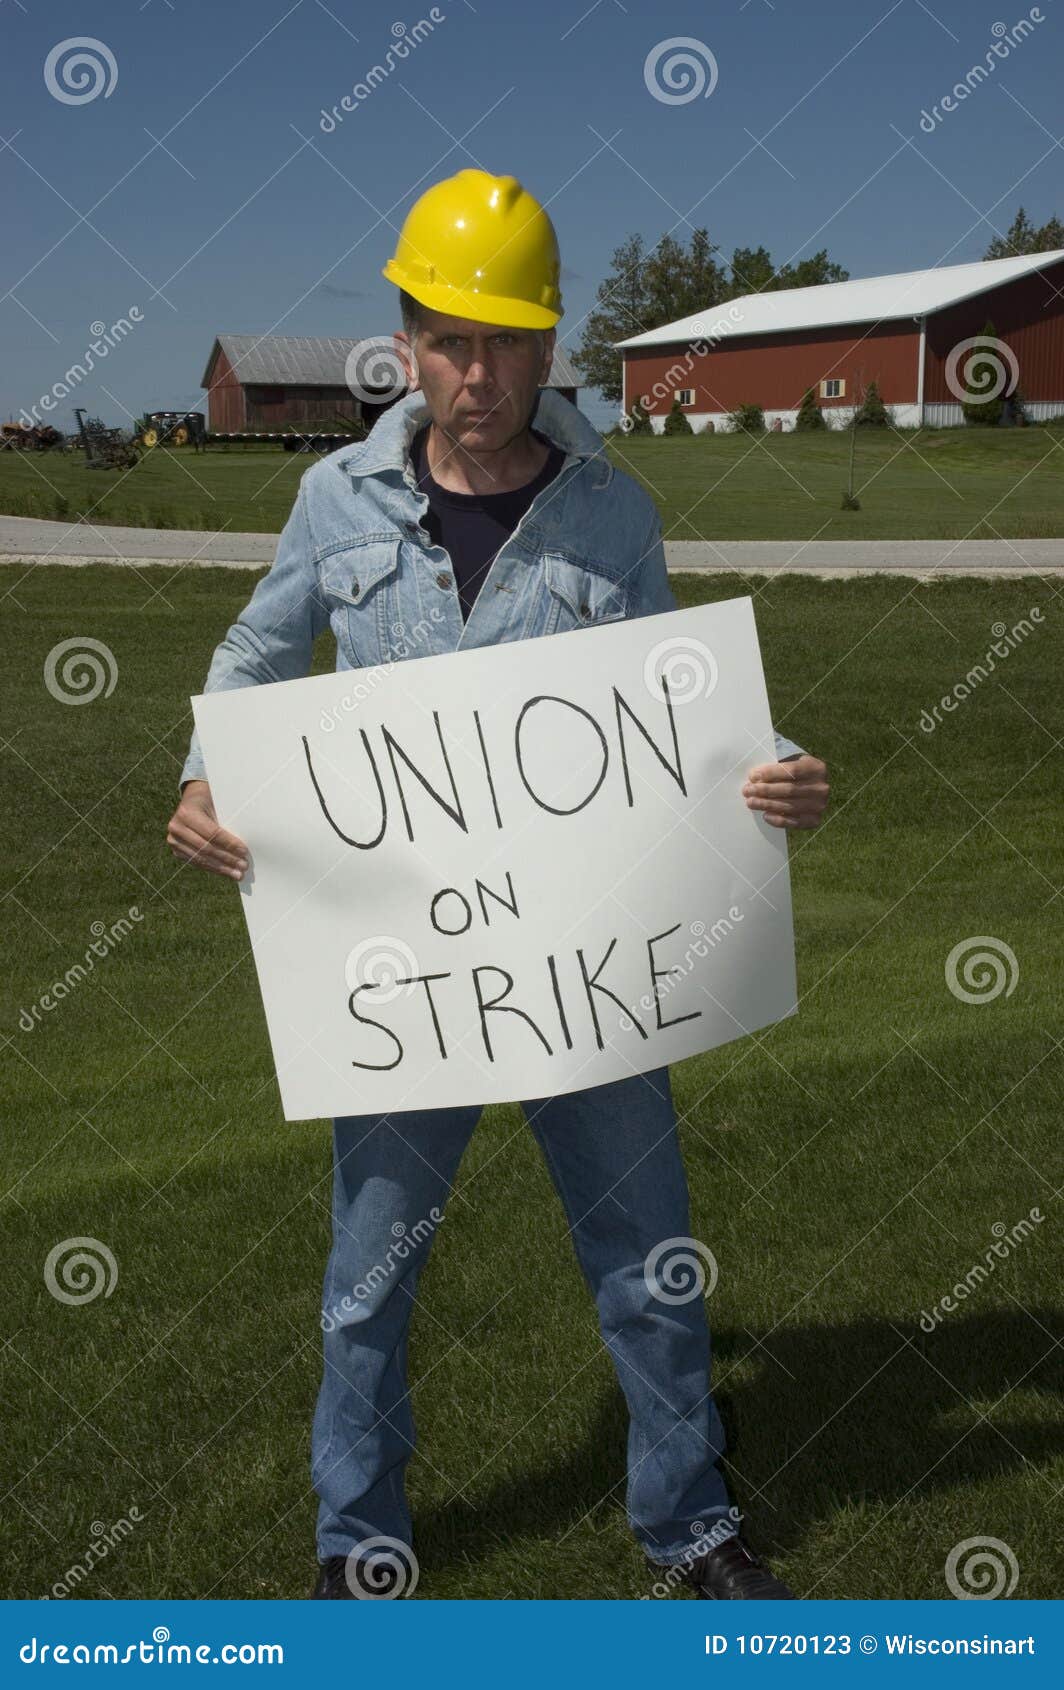 union worker on strike